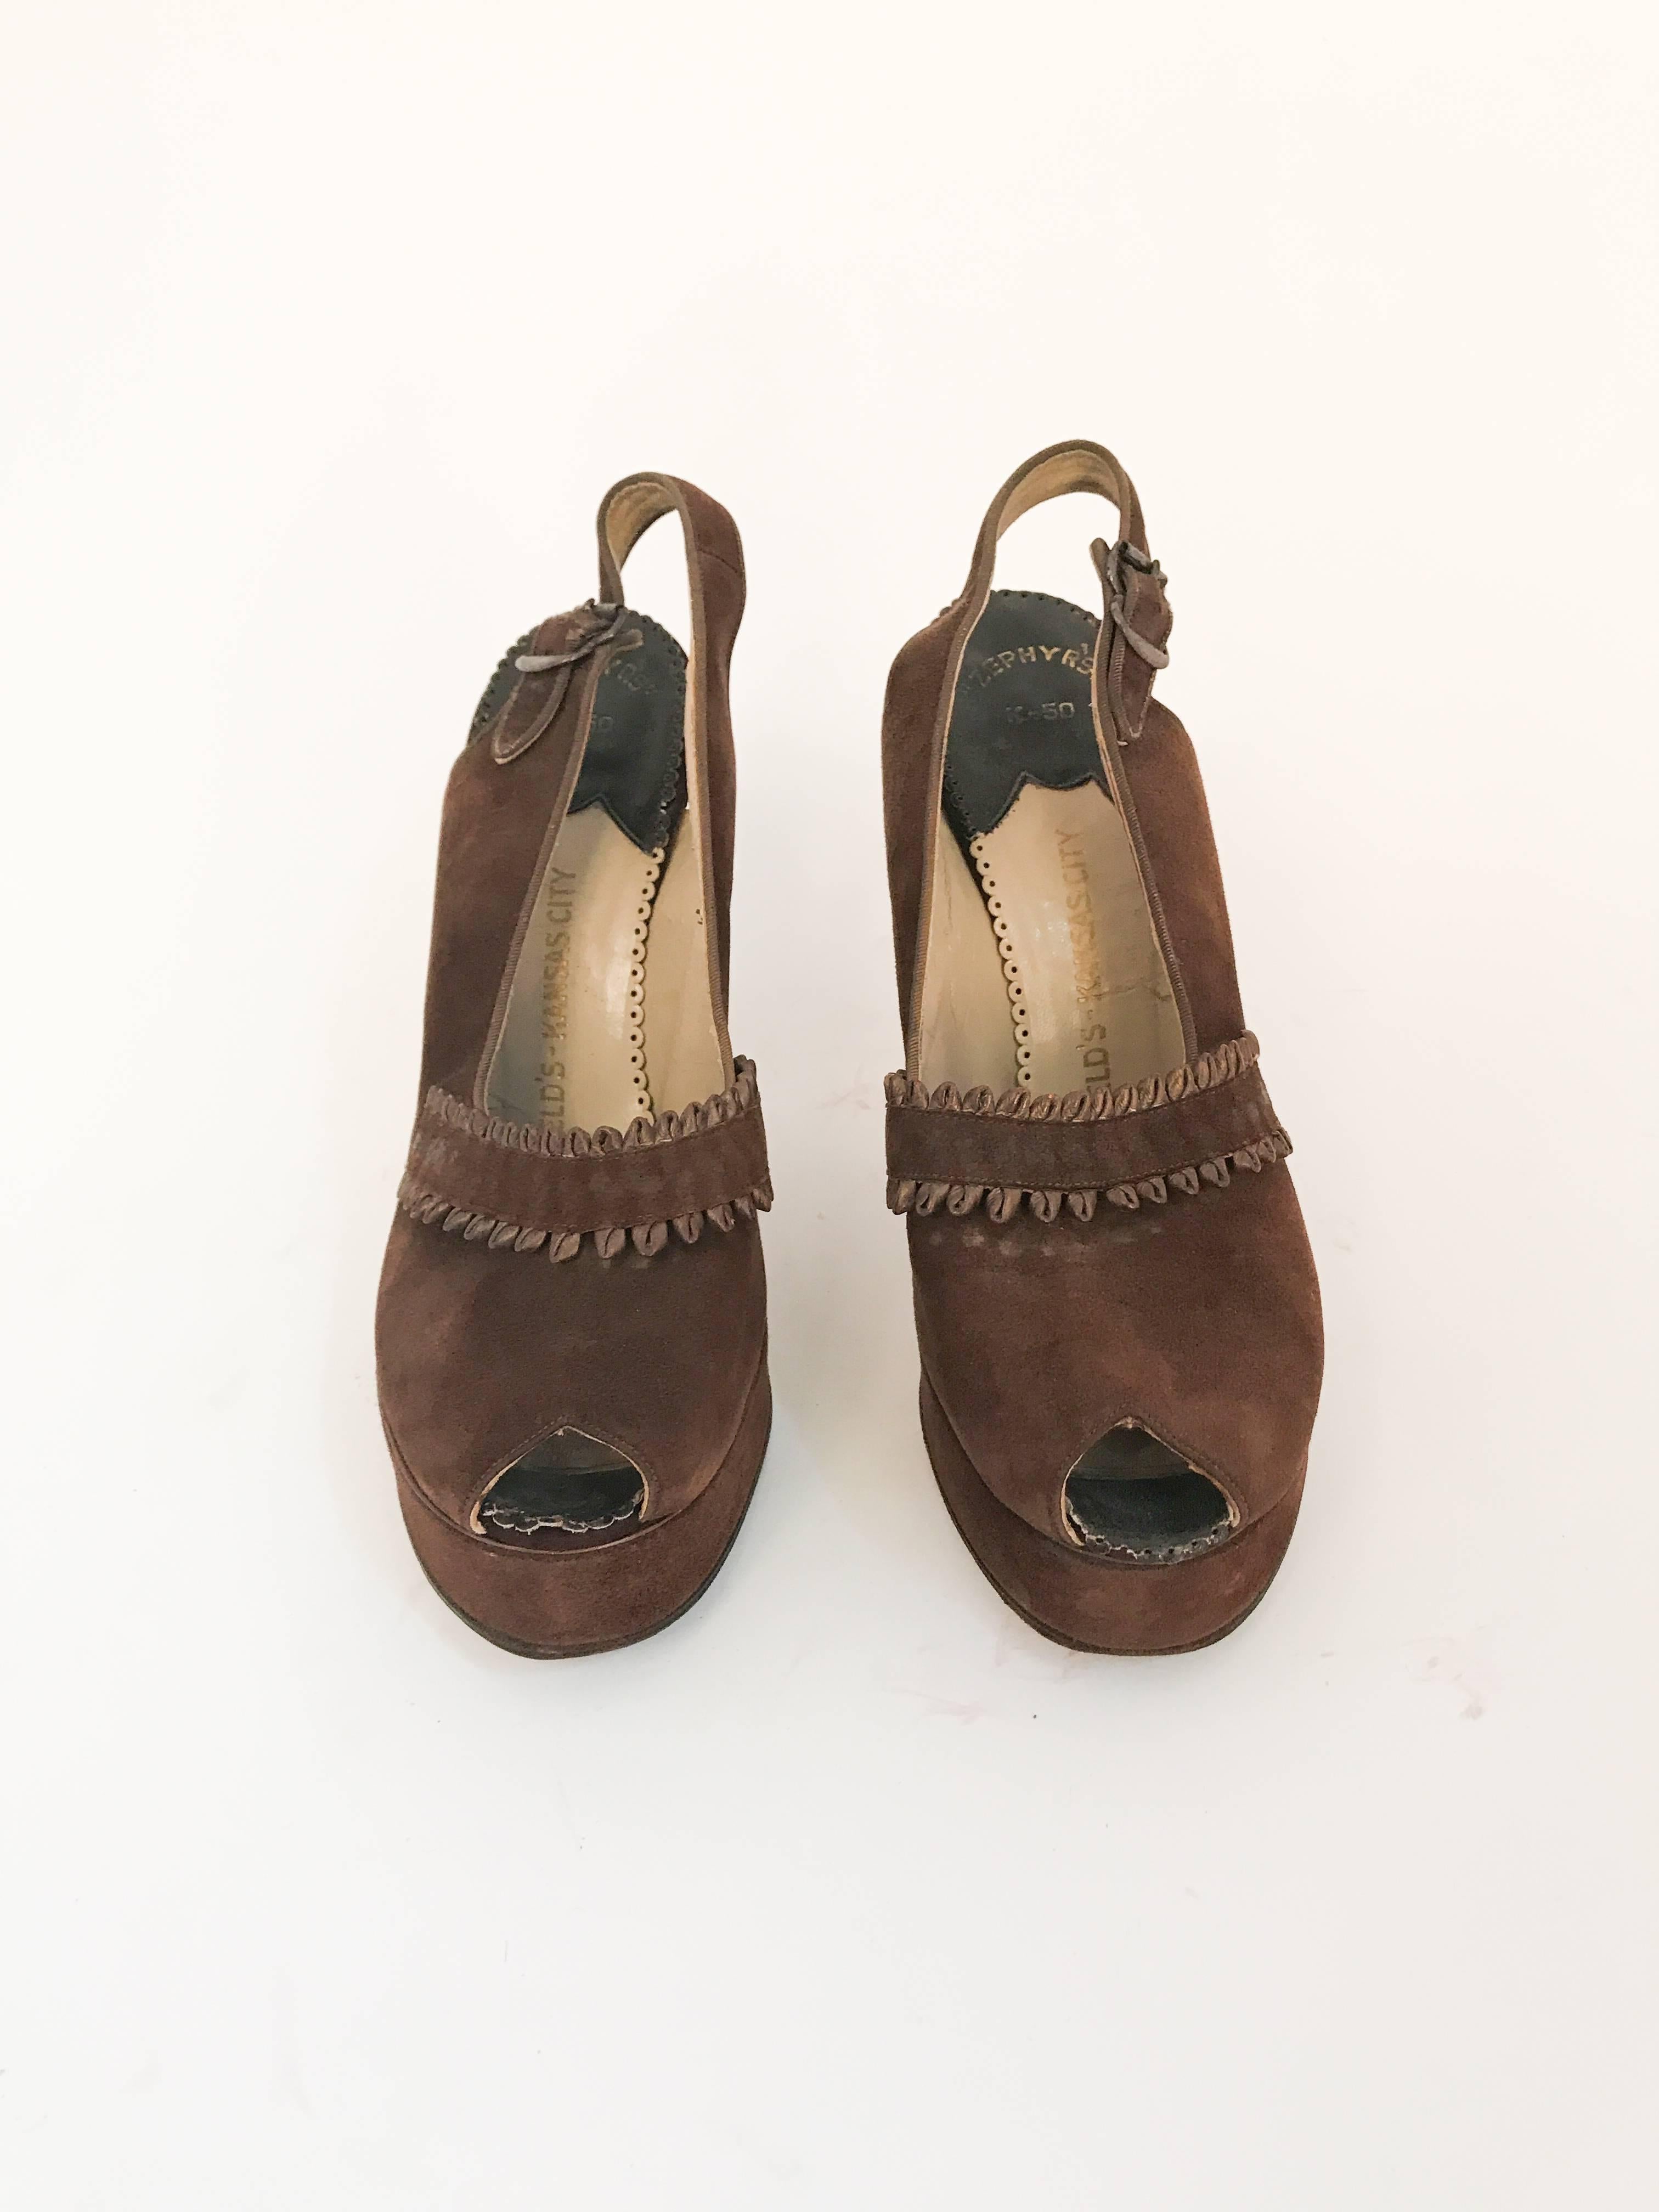 1947 Chaussures à talon en daim et cuir marron. Talons en cuir et en daim marron avec dos en bandoulière et fermeture à boucle. Pièce d'accent en daim et cuir bouclé. 